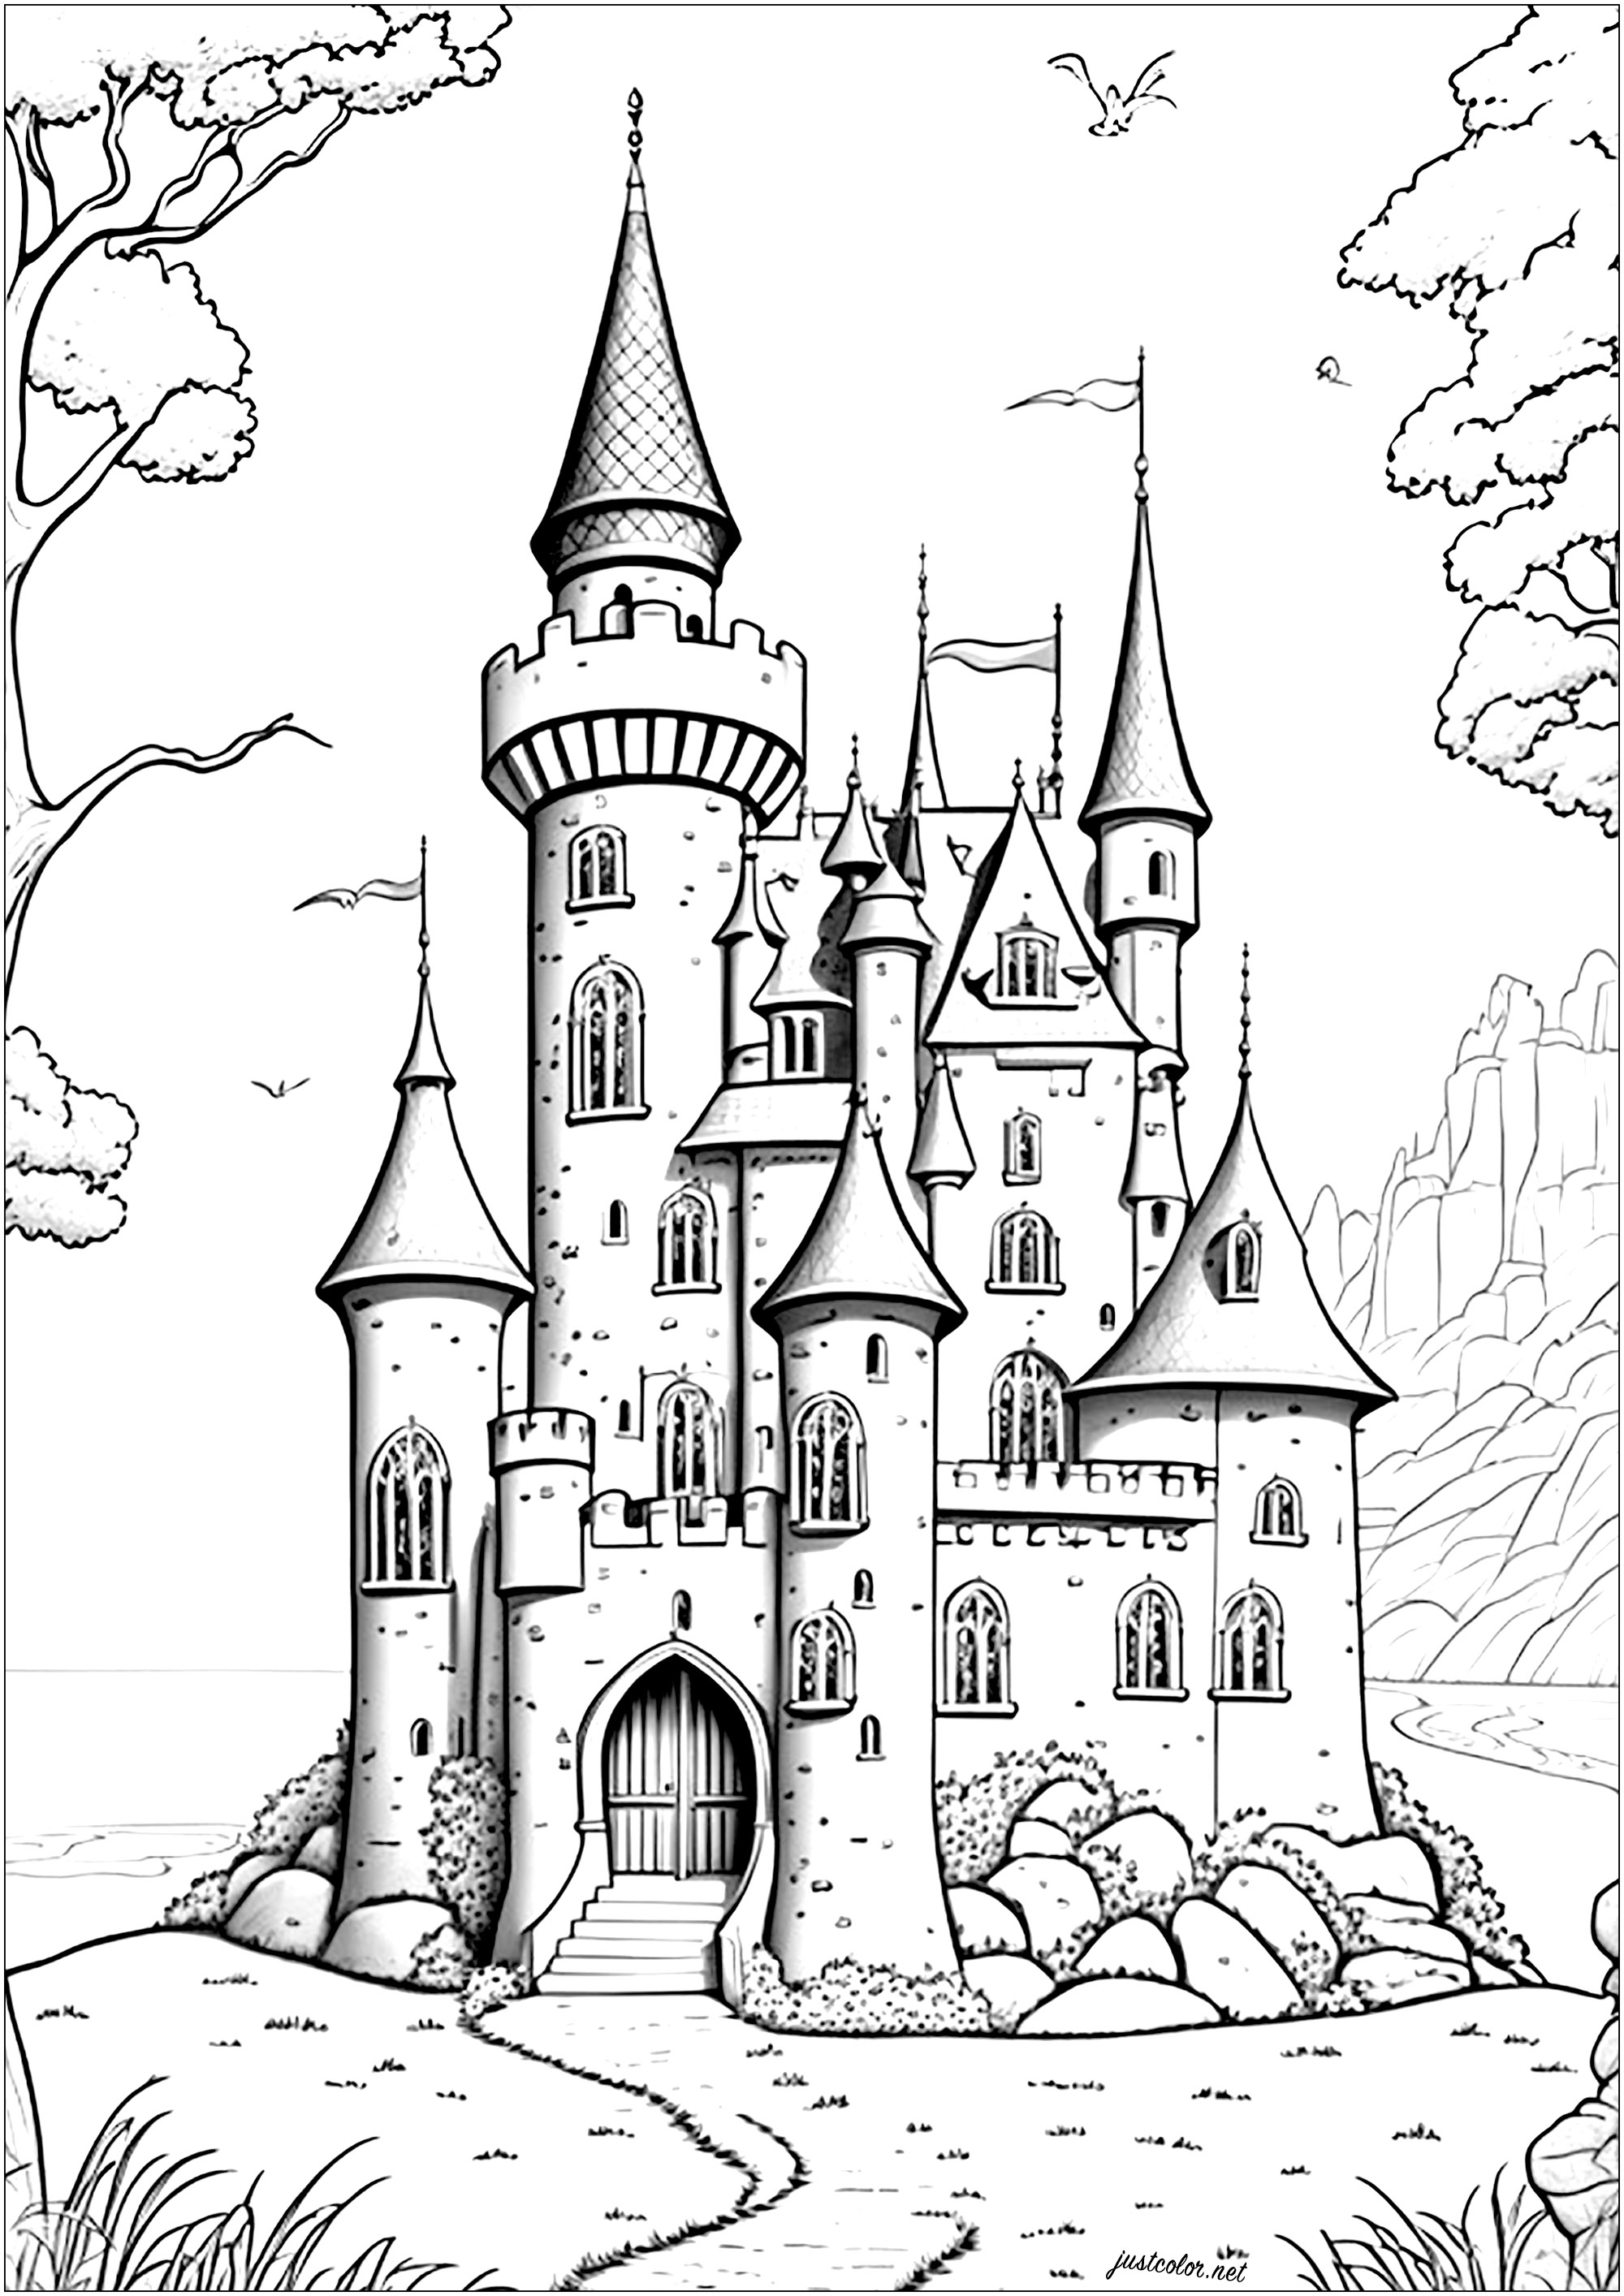 Château majestueux qui s'élève vers le ciel, constitué de murs de pierre et de tours pointues. La porte principale est grande et imposante et chaque tourelle est surmontée d'un drapeau qui flotte au vent.Replongez dans le monde des contes de fées de Disney grâce à ce joli chateau 100% original ...